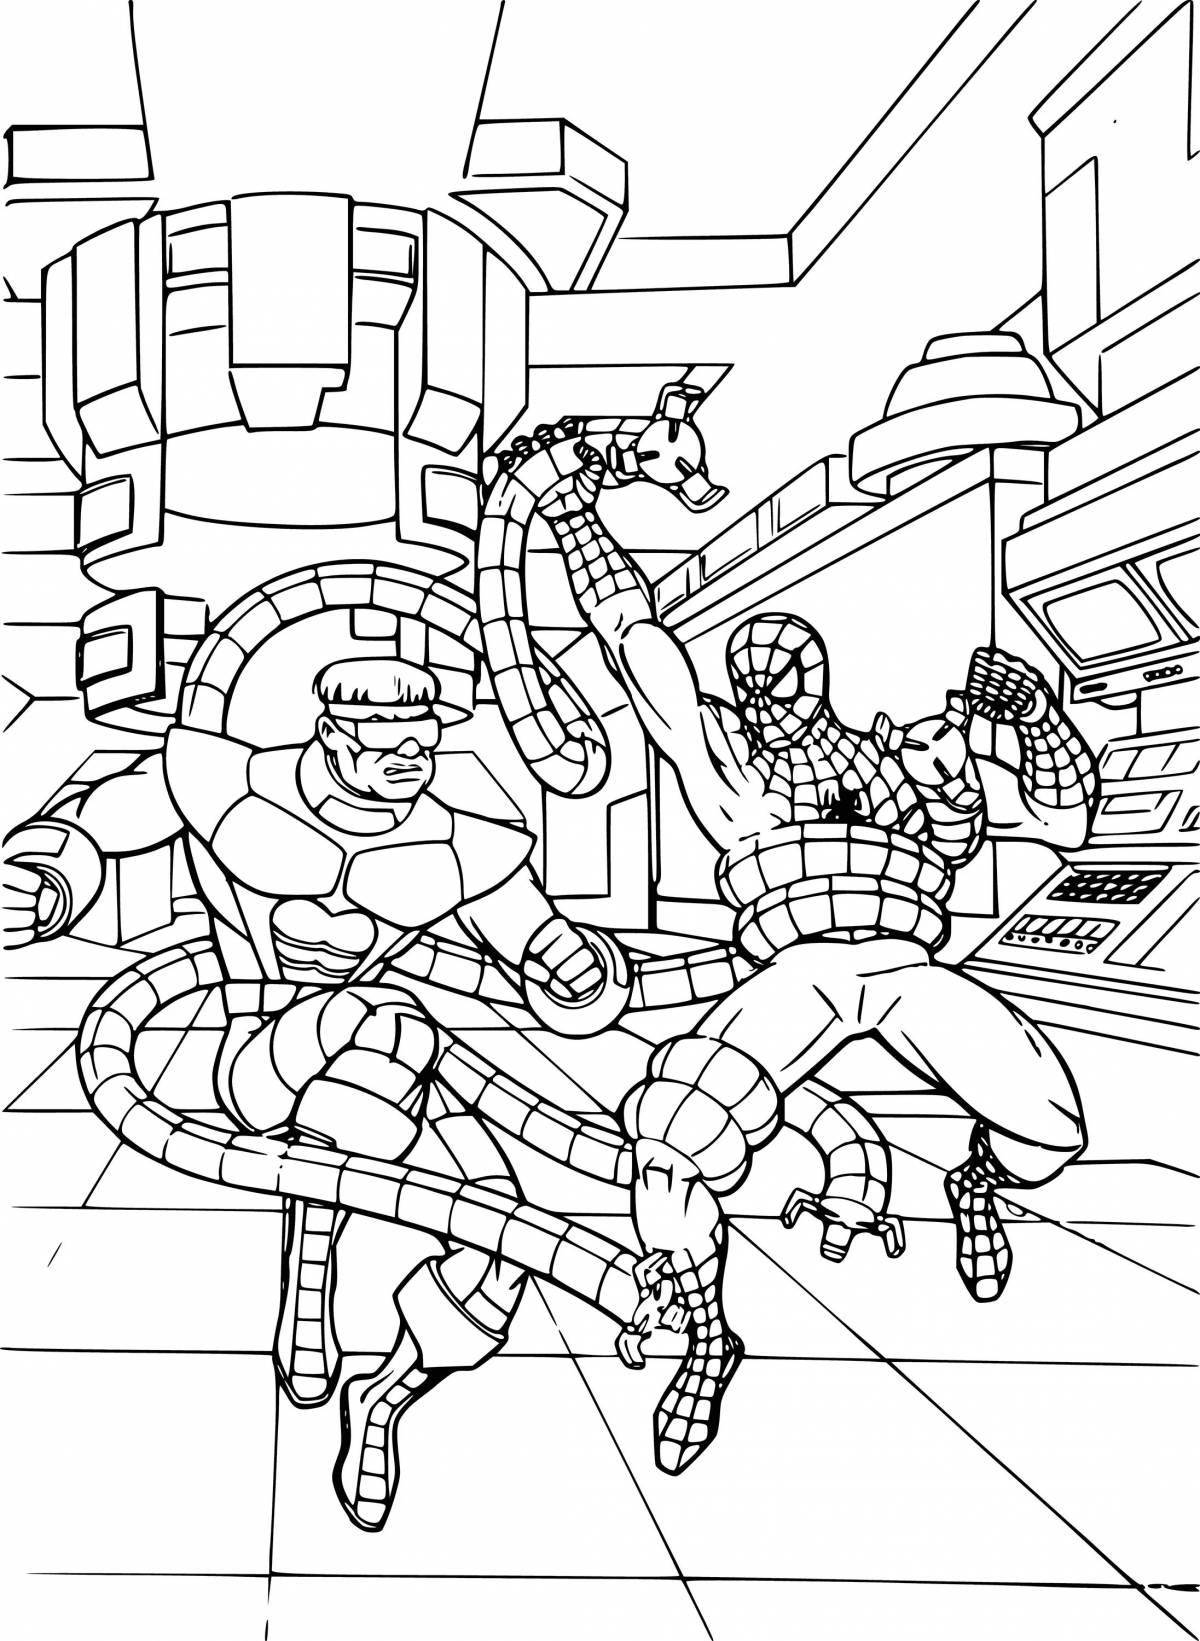 Fun spiderman cartoon coloring page